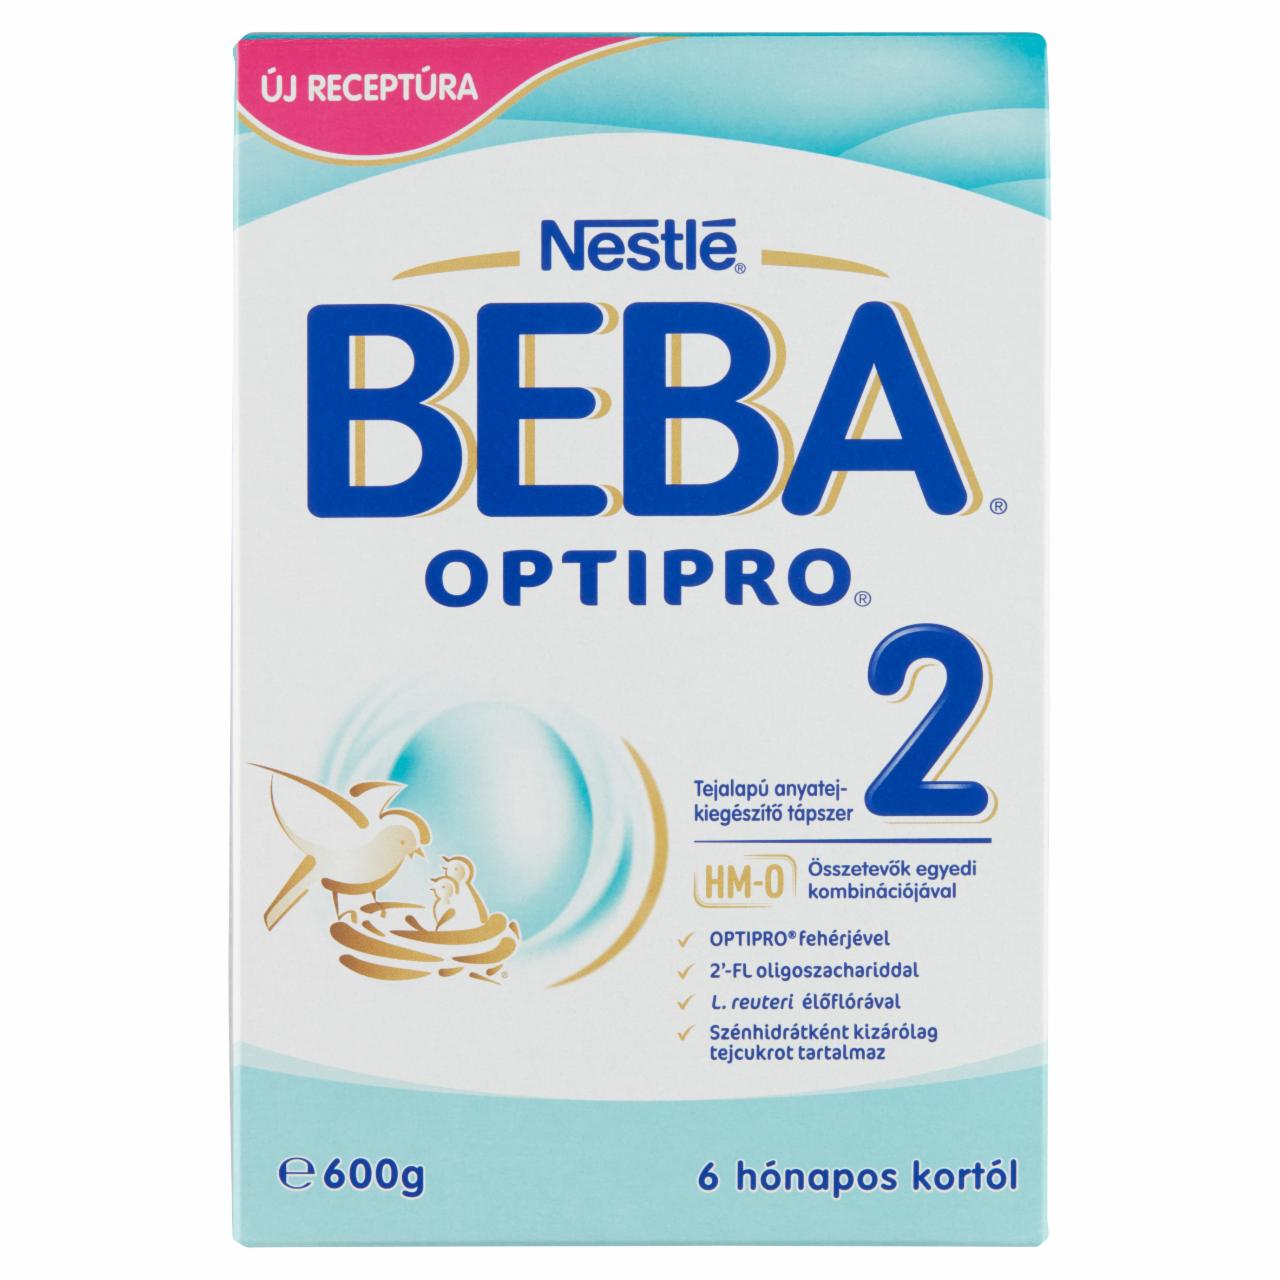 Képek - Beba Optipro 2 tejalapú anyatej-kiegészítő tápszer 6 hónapos kortól 2 x 300 g (600 g)